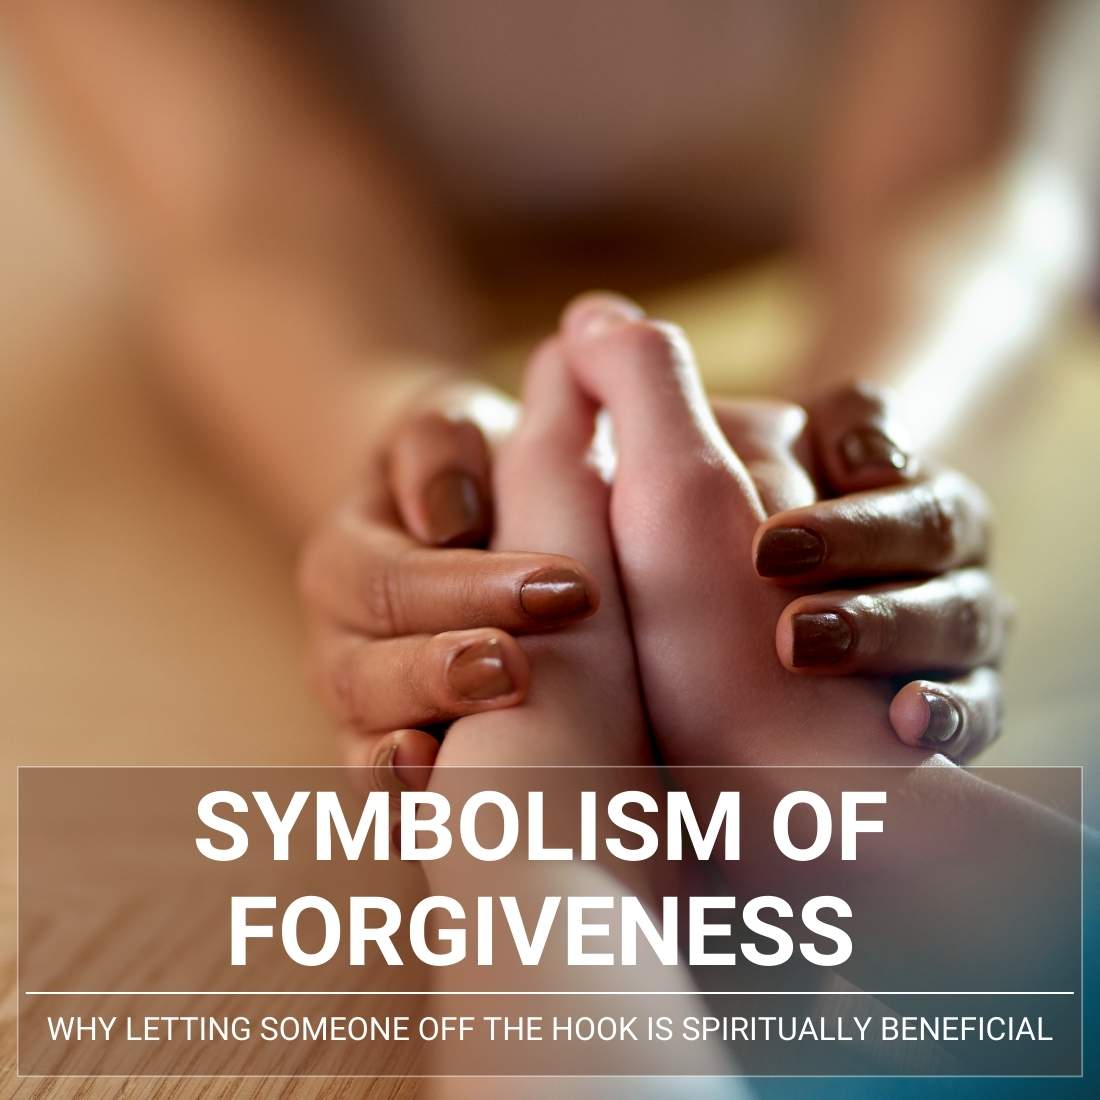 Symbolism of Forgiveness